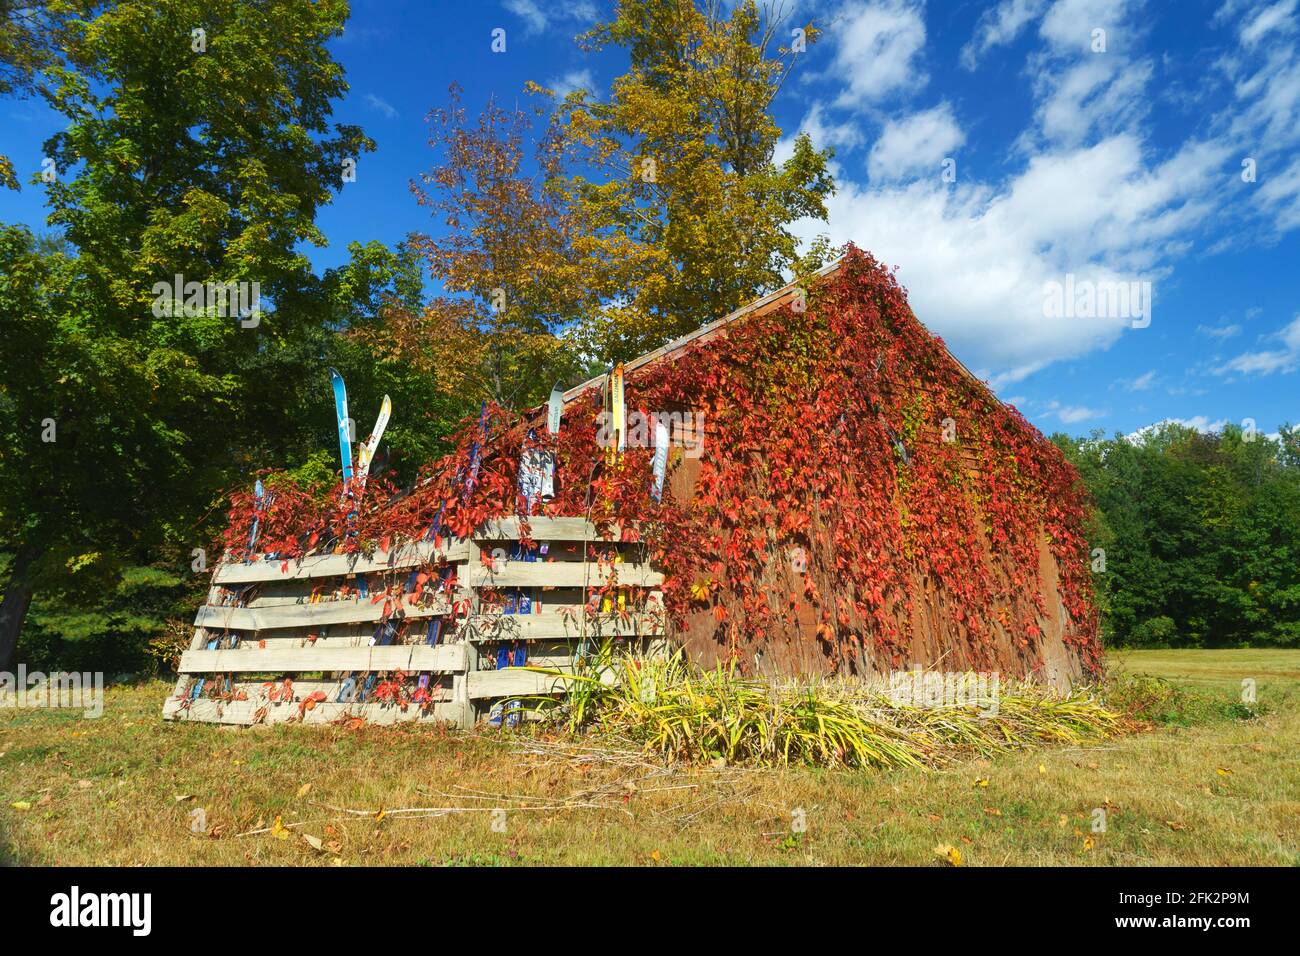 Grange pittoresque recouverte de vigne rouge à l'automne, Bartlett NH, États-Unis. Sur le côté, un corral en bois contient de vieilles paires de skis. Banque D'Images